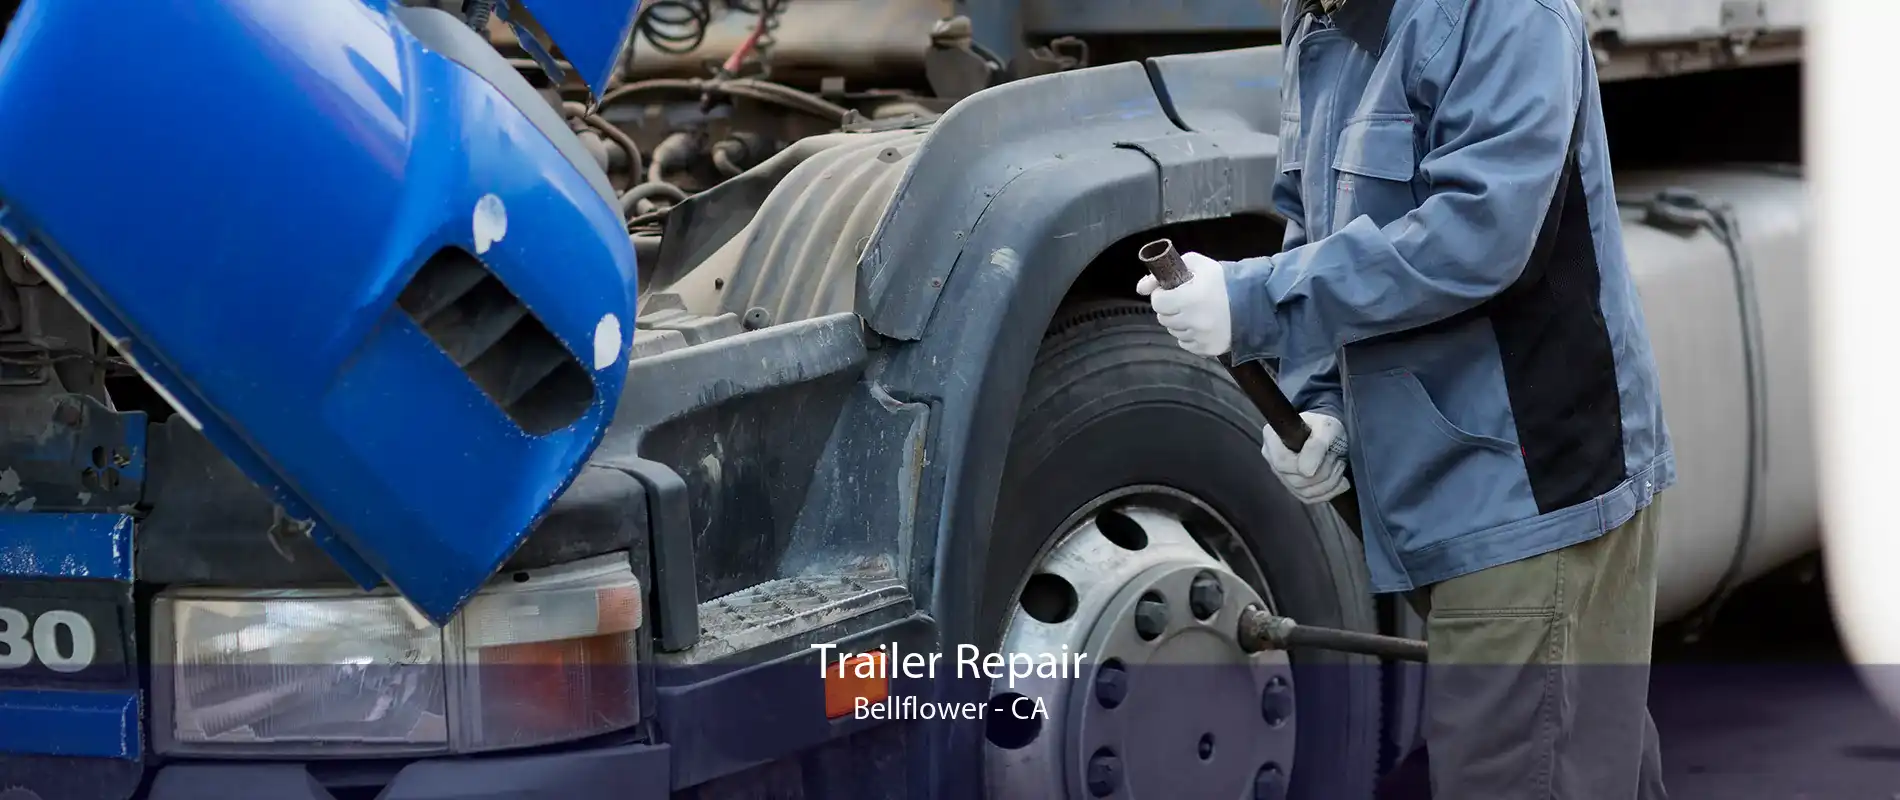 Trailer Repair Bellflower - CA